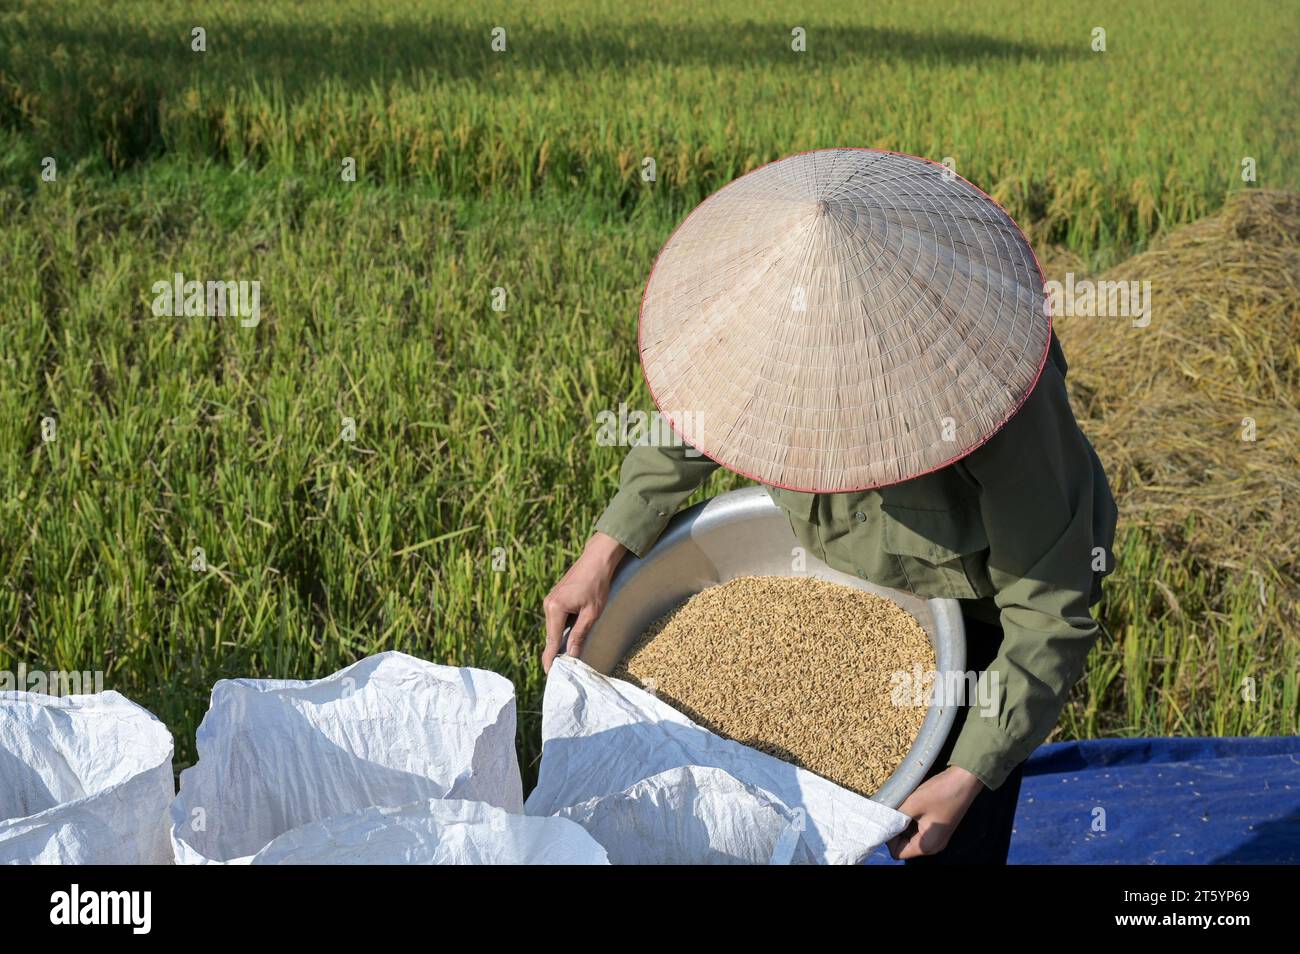 VIETNAM, Provinz Yen Bai, Cam Nhan, Kleinbauern Dreschreis nach der Ernte / Kleinbauern dreschen Reis nach der Ernte Stockfoto